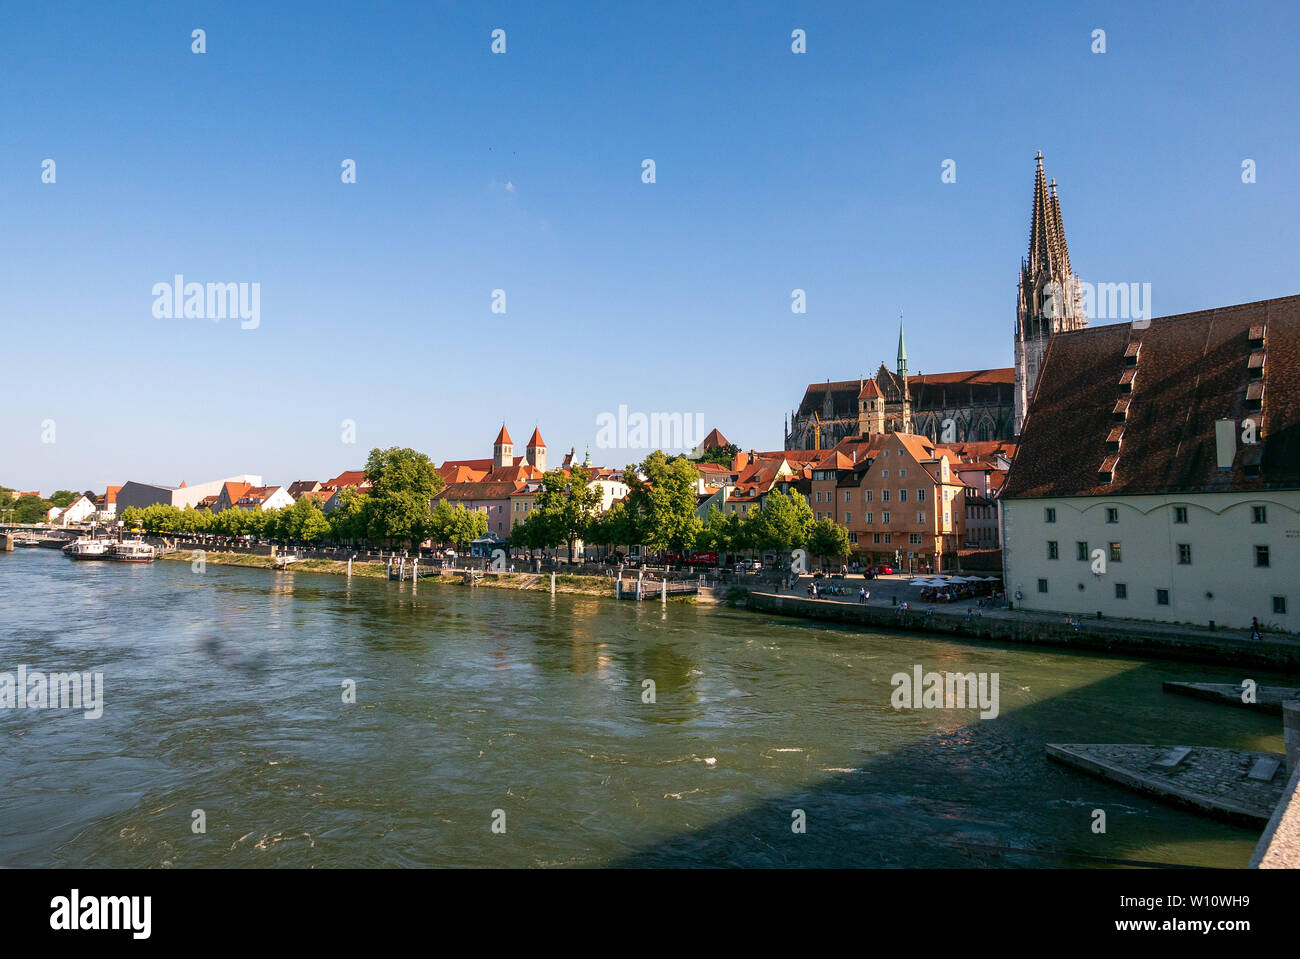 REGENSBURG, Alemania - 13 de junio, 2019: Ratisbona paisaje visto desde el puente de piedra medieval (Steinerne Brücke) sobre el río Danubio. El medie Foto de stock